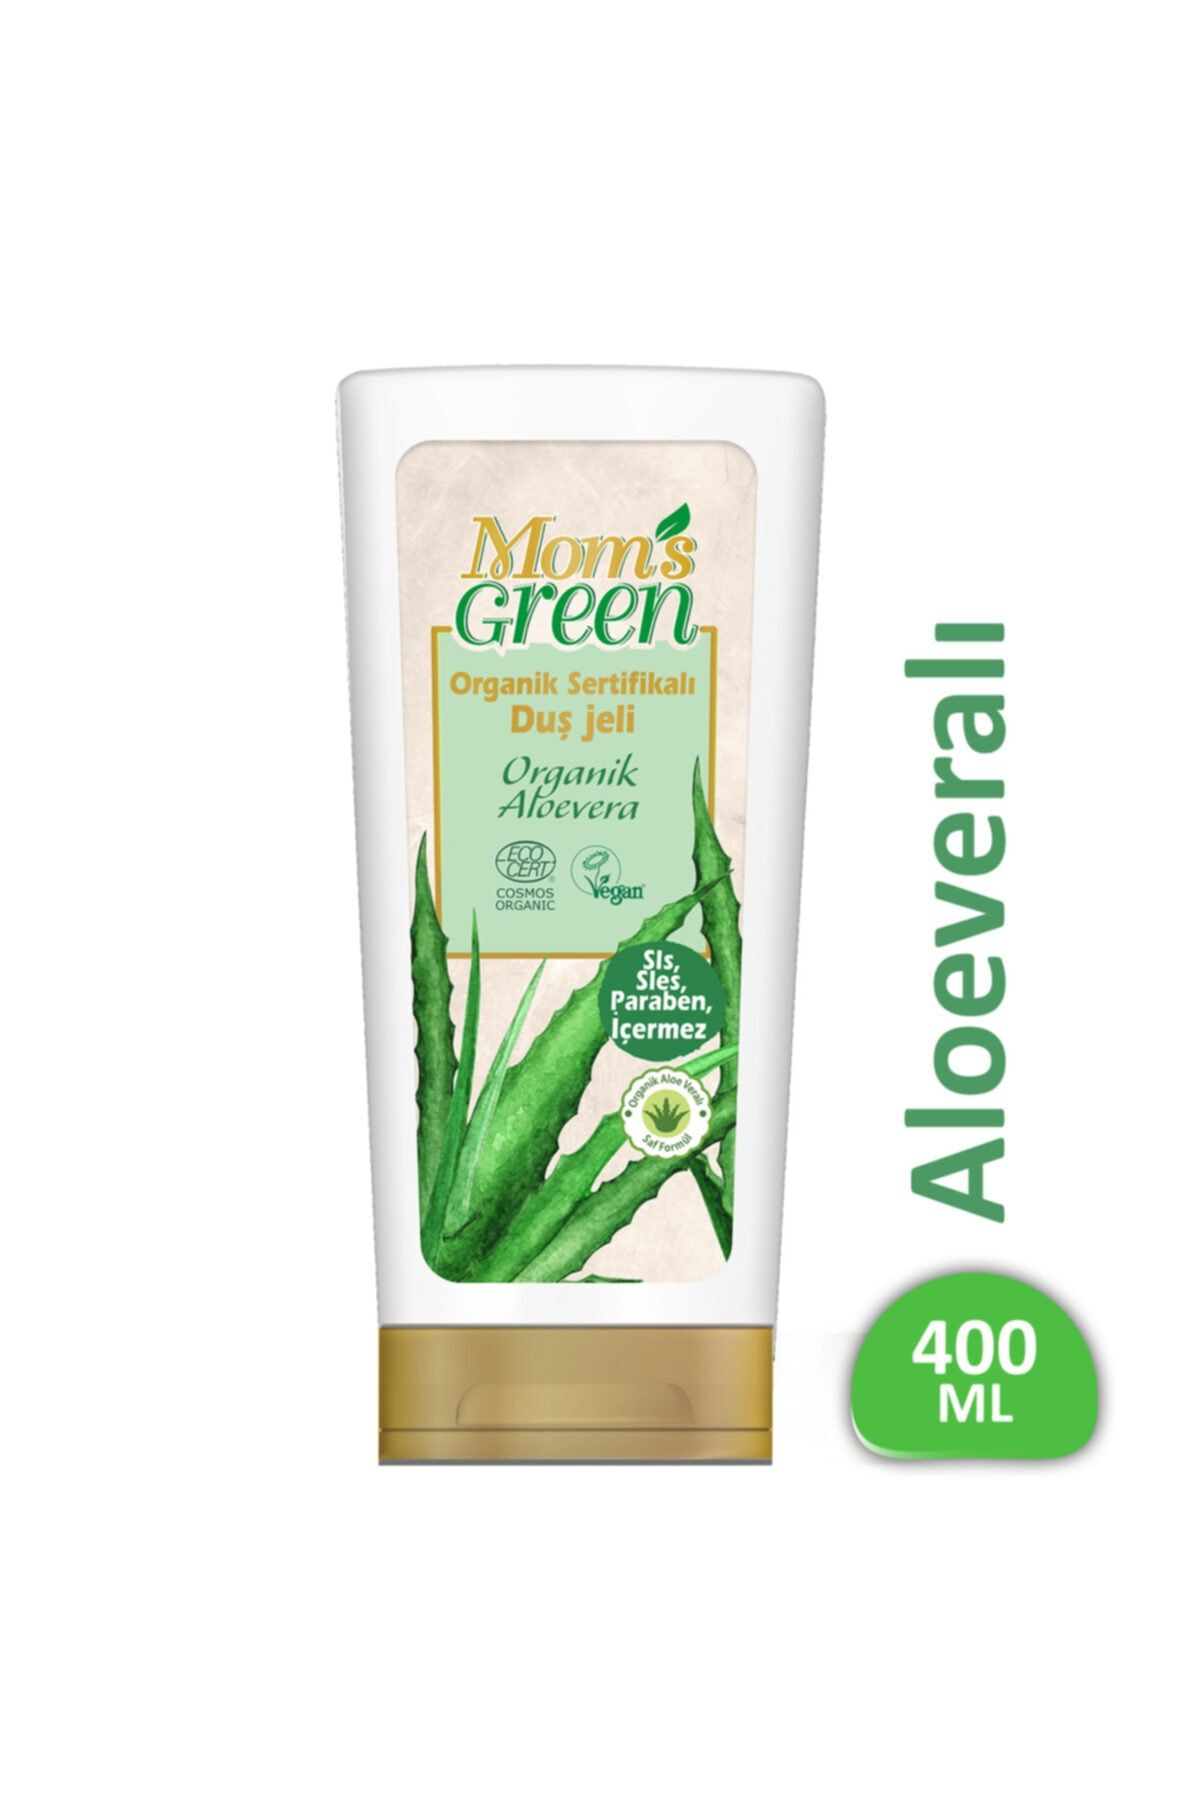 Mom's Green Organik Sertifikalı Duş Jeli Organik Aloeveralı 400 ml